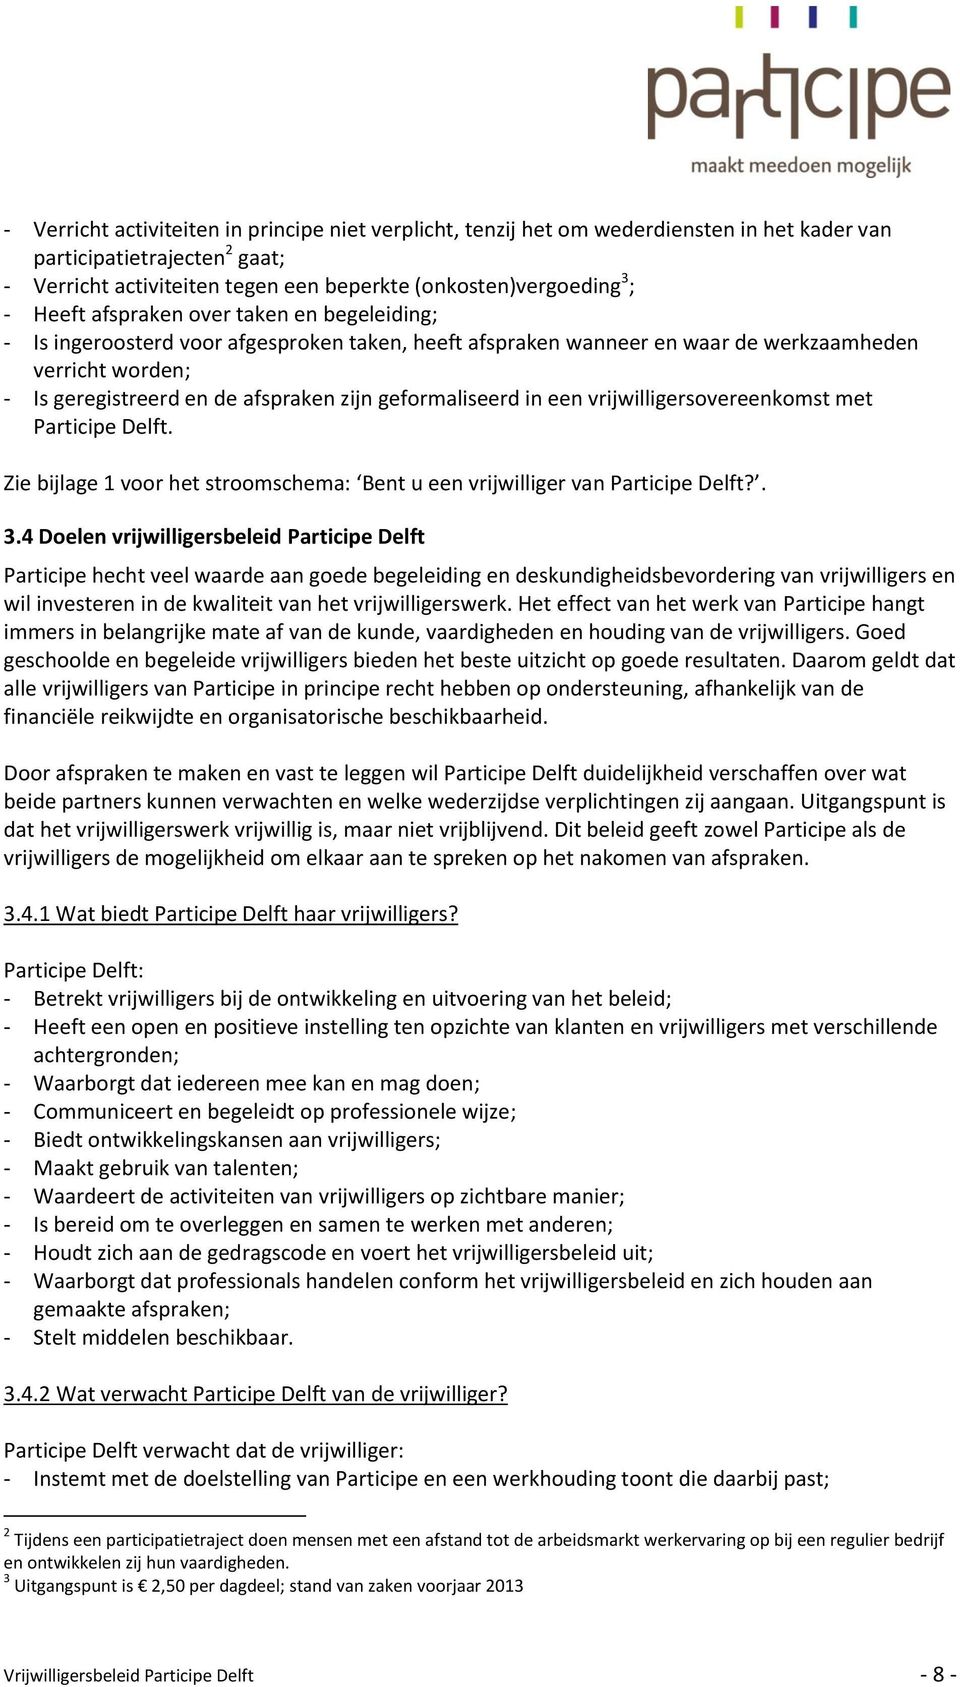 geformaliseerd in een vrijwilligersovereenkomst met Participe Delft. Zie bijlage 1 voor het stroomschema: Bent u een vrijwilliger van Participe Delft?. 3.